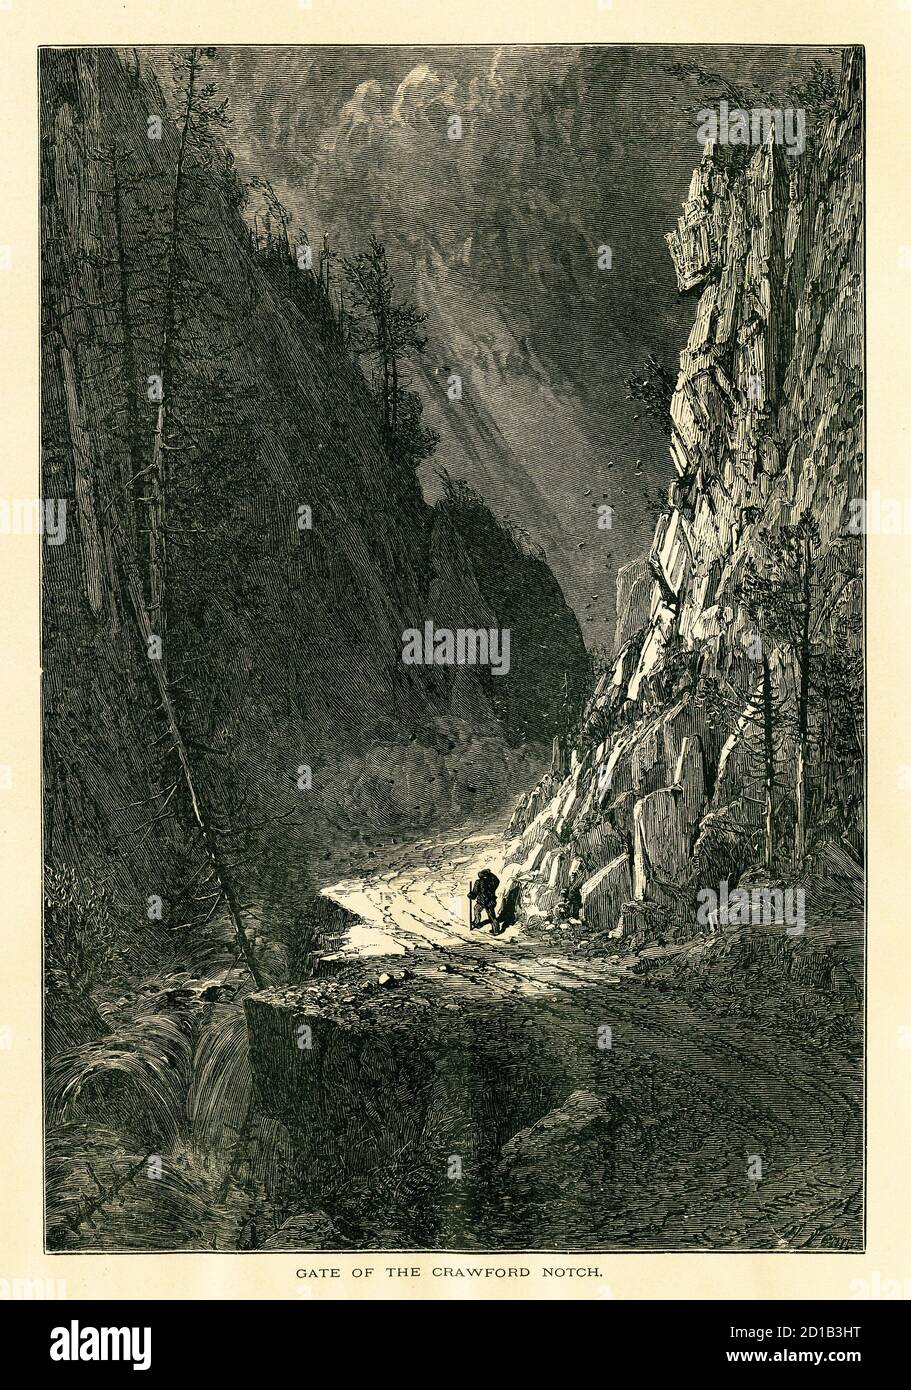 Stich aus dem 19. Jahrhundert des Tores von Crawford Notch in den White Mountains von New Hampshire. Illustration veröffentlicht im malerischen Amerika oder dem LAN Stockfoto